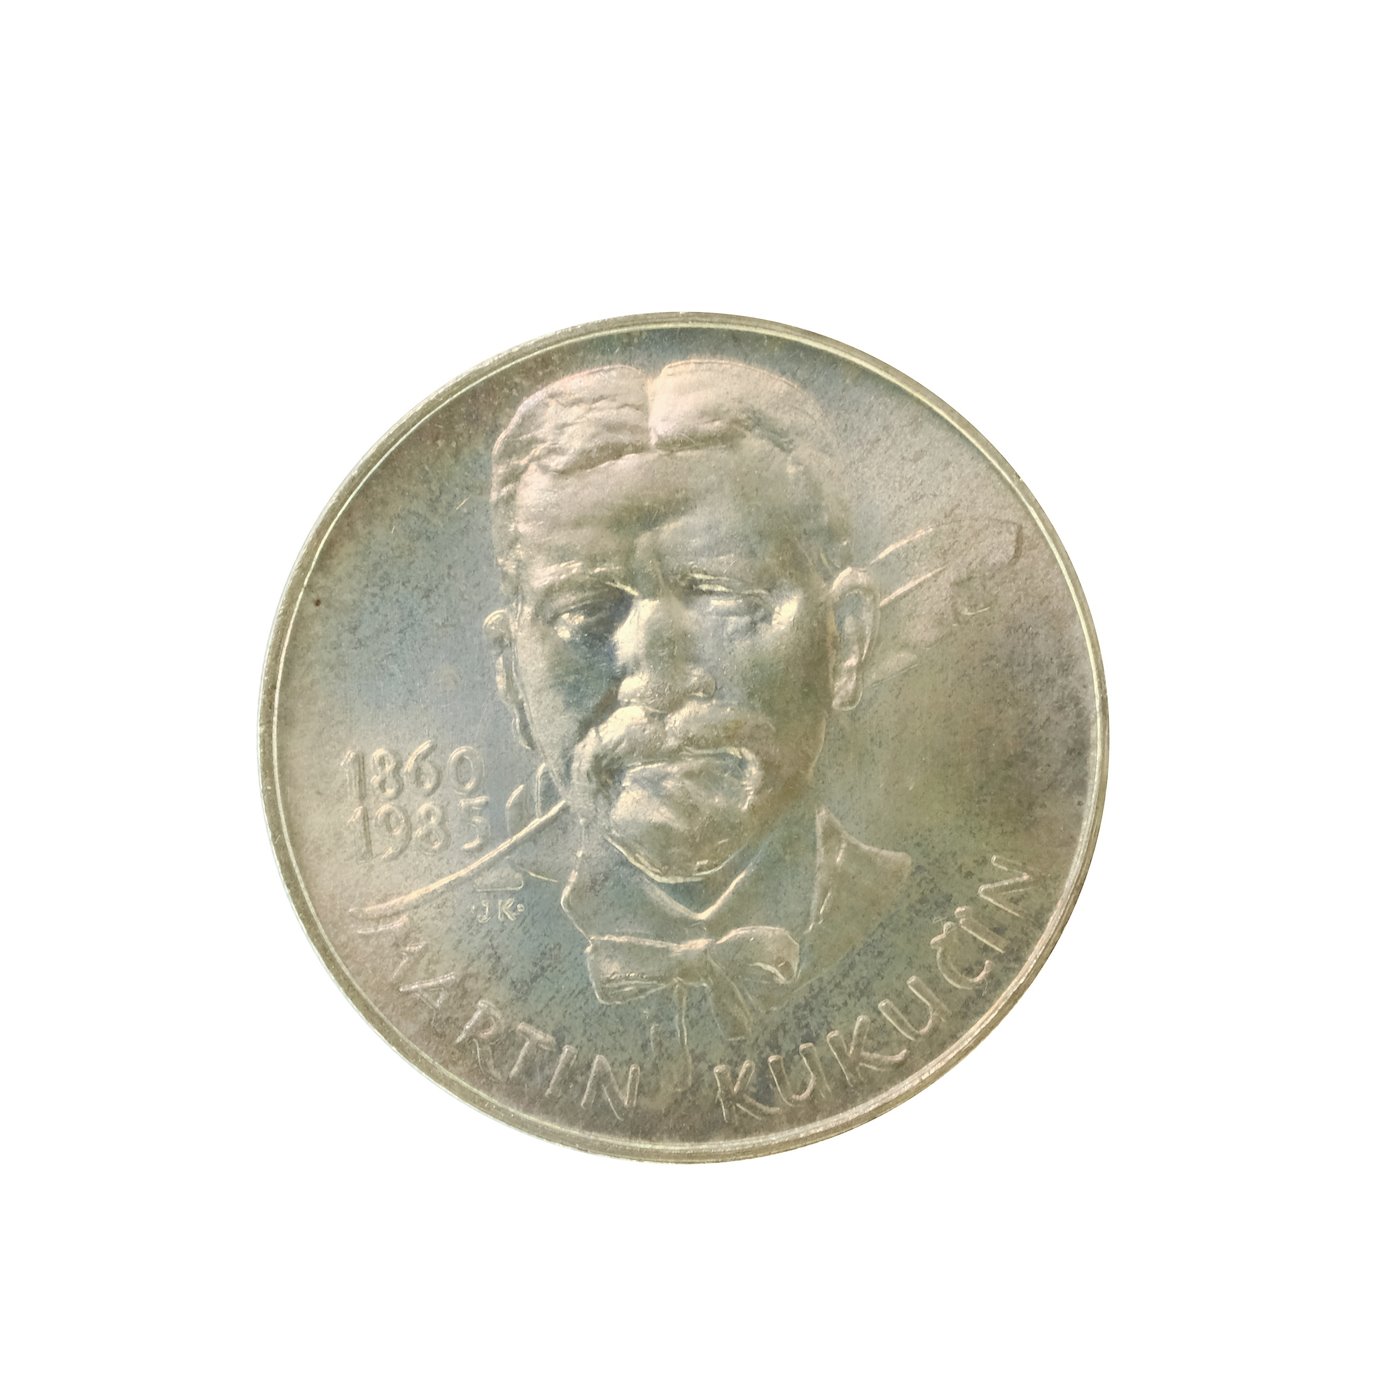 .. - Pamětní stříbrná mince vydaná ke 125 výročí narození Martina Kukučína 1985 100 Kčs, stříbro 500/1000, hrubá hmotnost 9 g